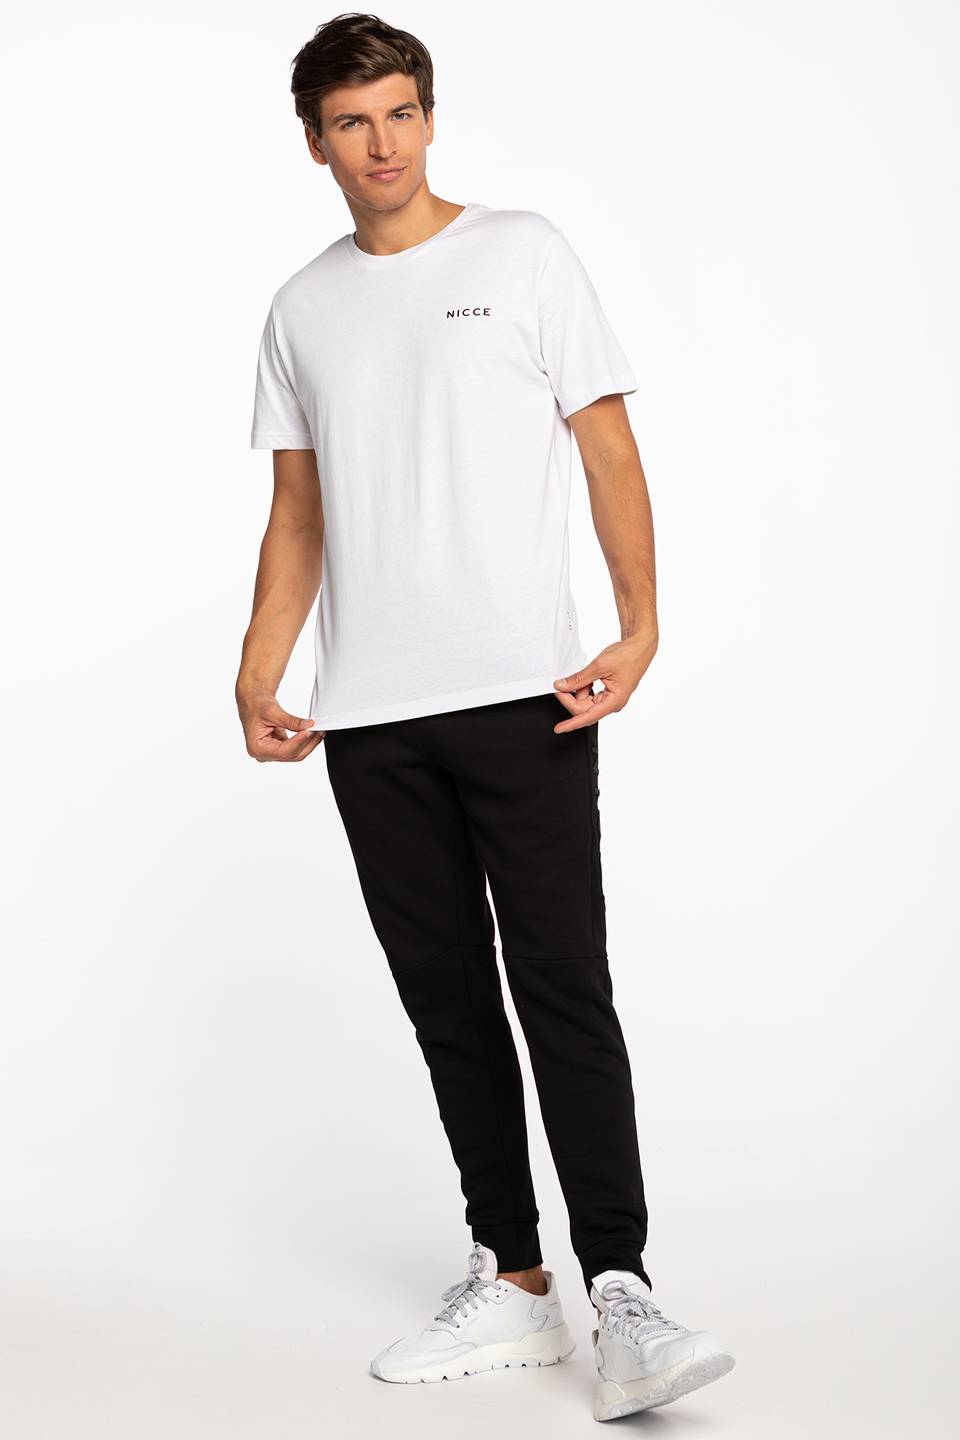 Koszulka Nicce CHEST LOGO T-SHIRT 001-3-09-02-0002 WHITE